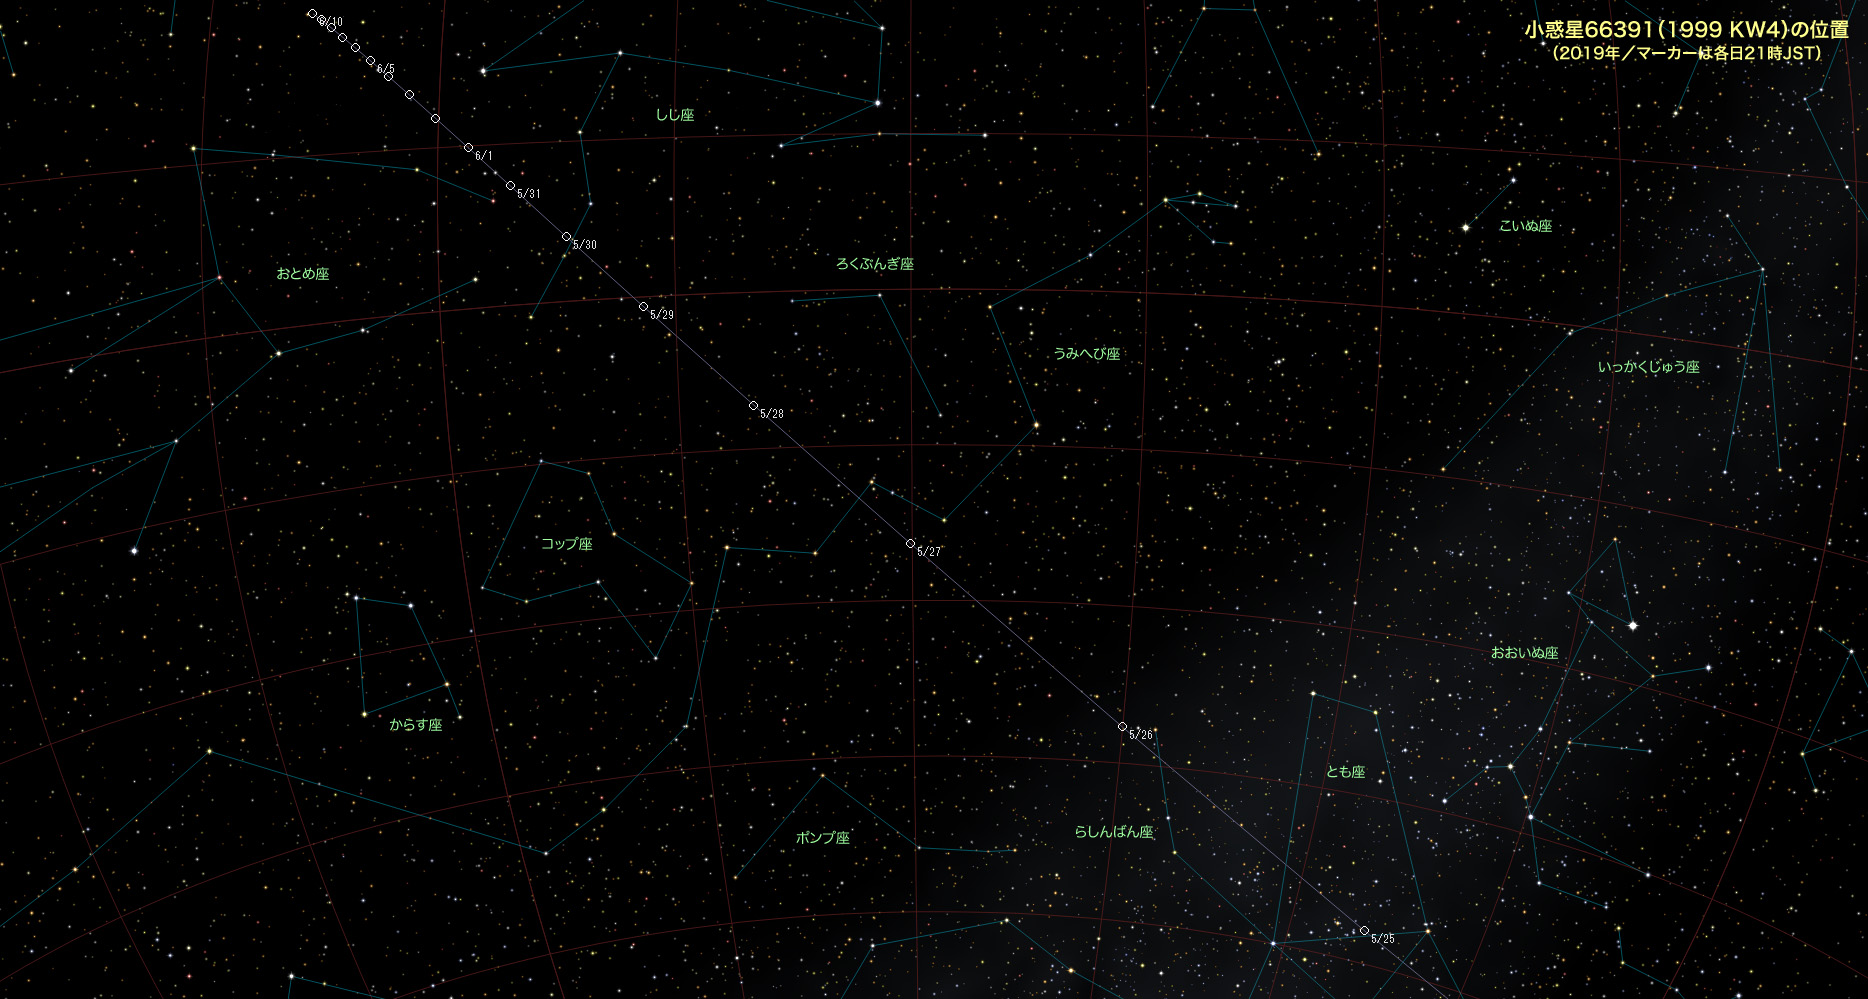 201905-小惑星66391 (1999 KW4)星図